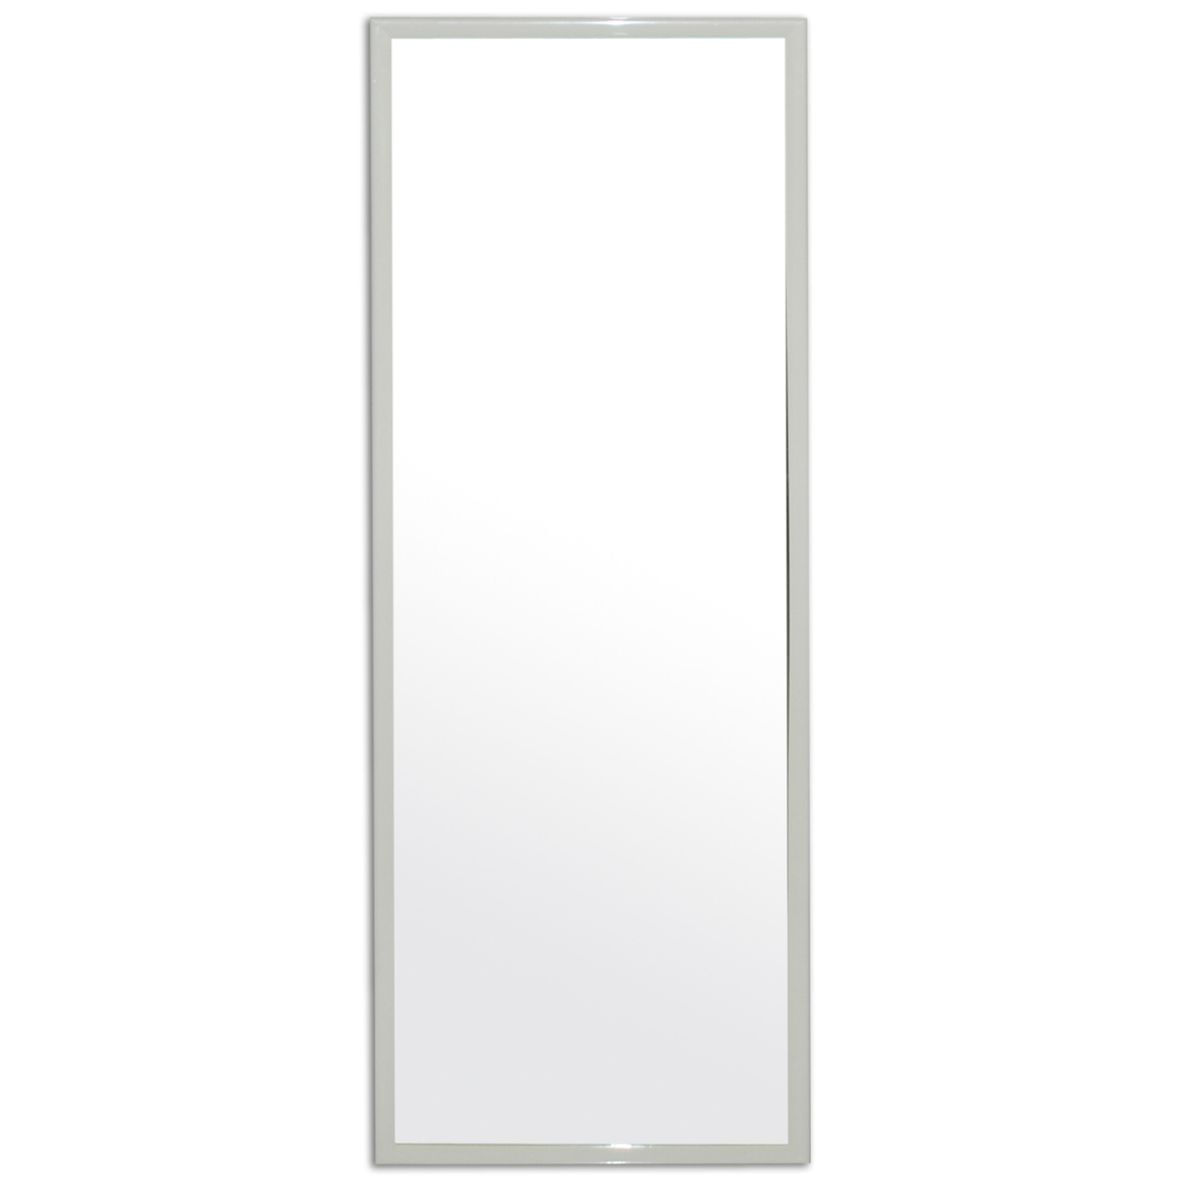 Espelho Emoldurado Retangular 90x30cm Carrefour HO55216